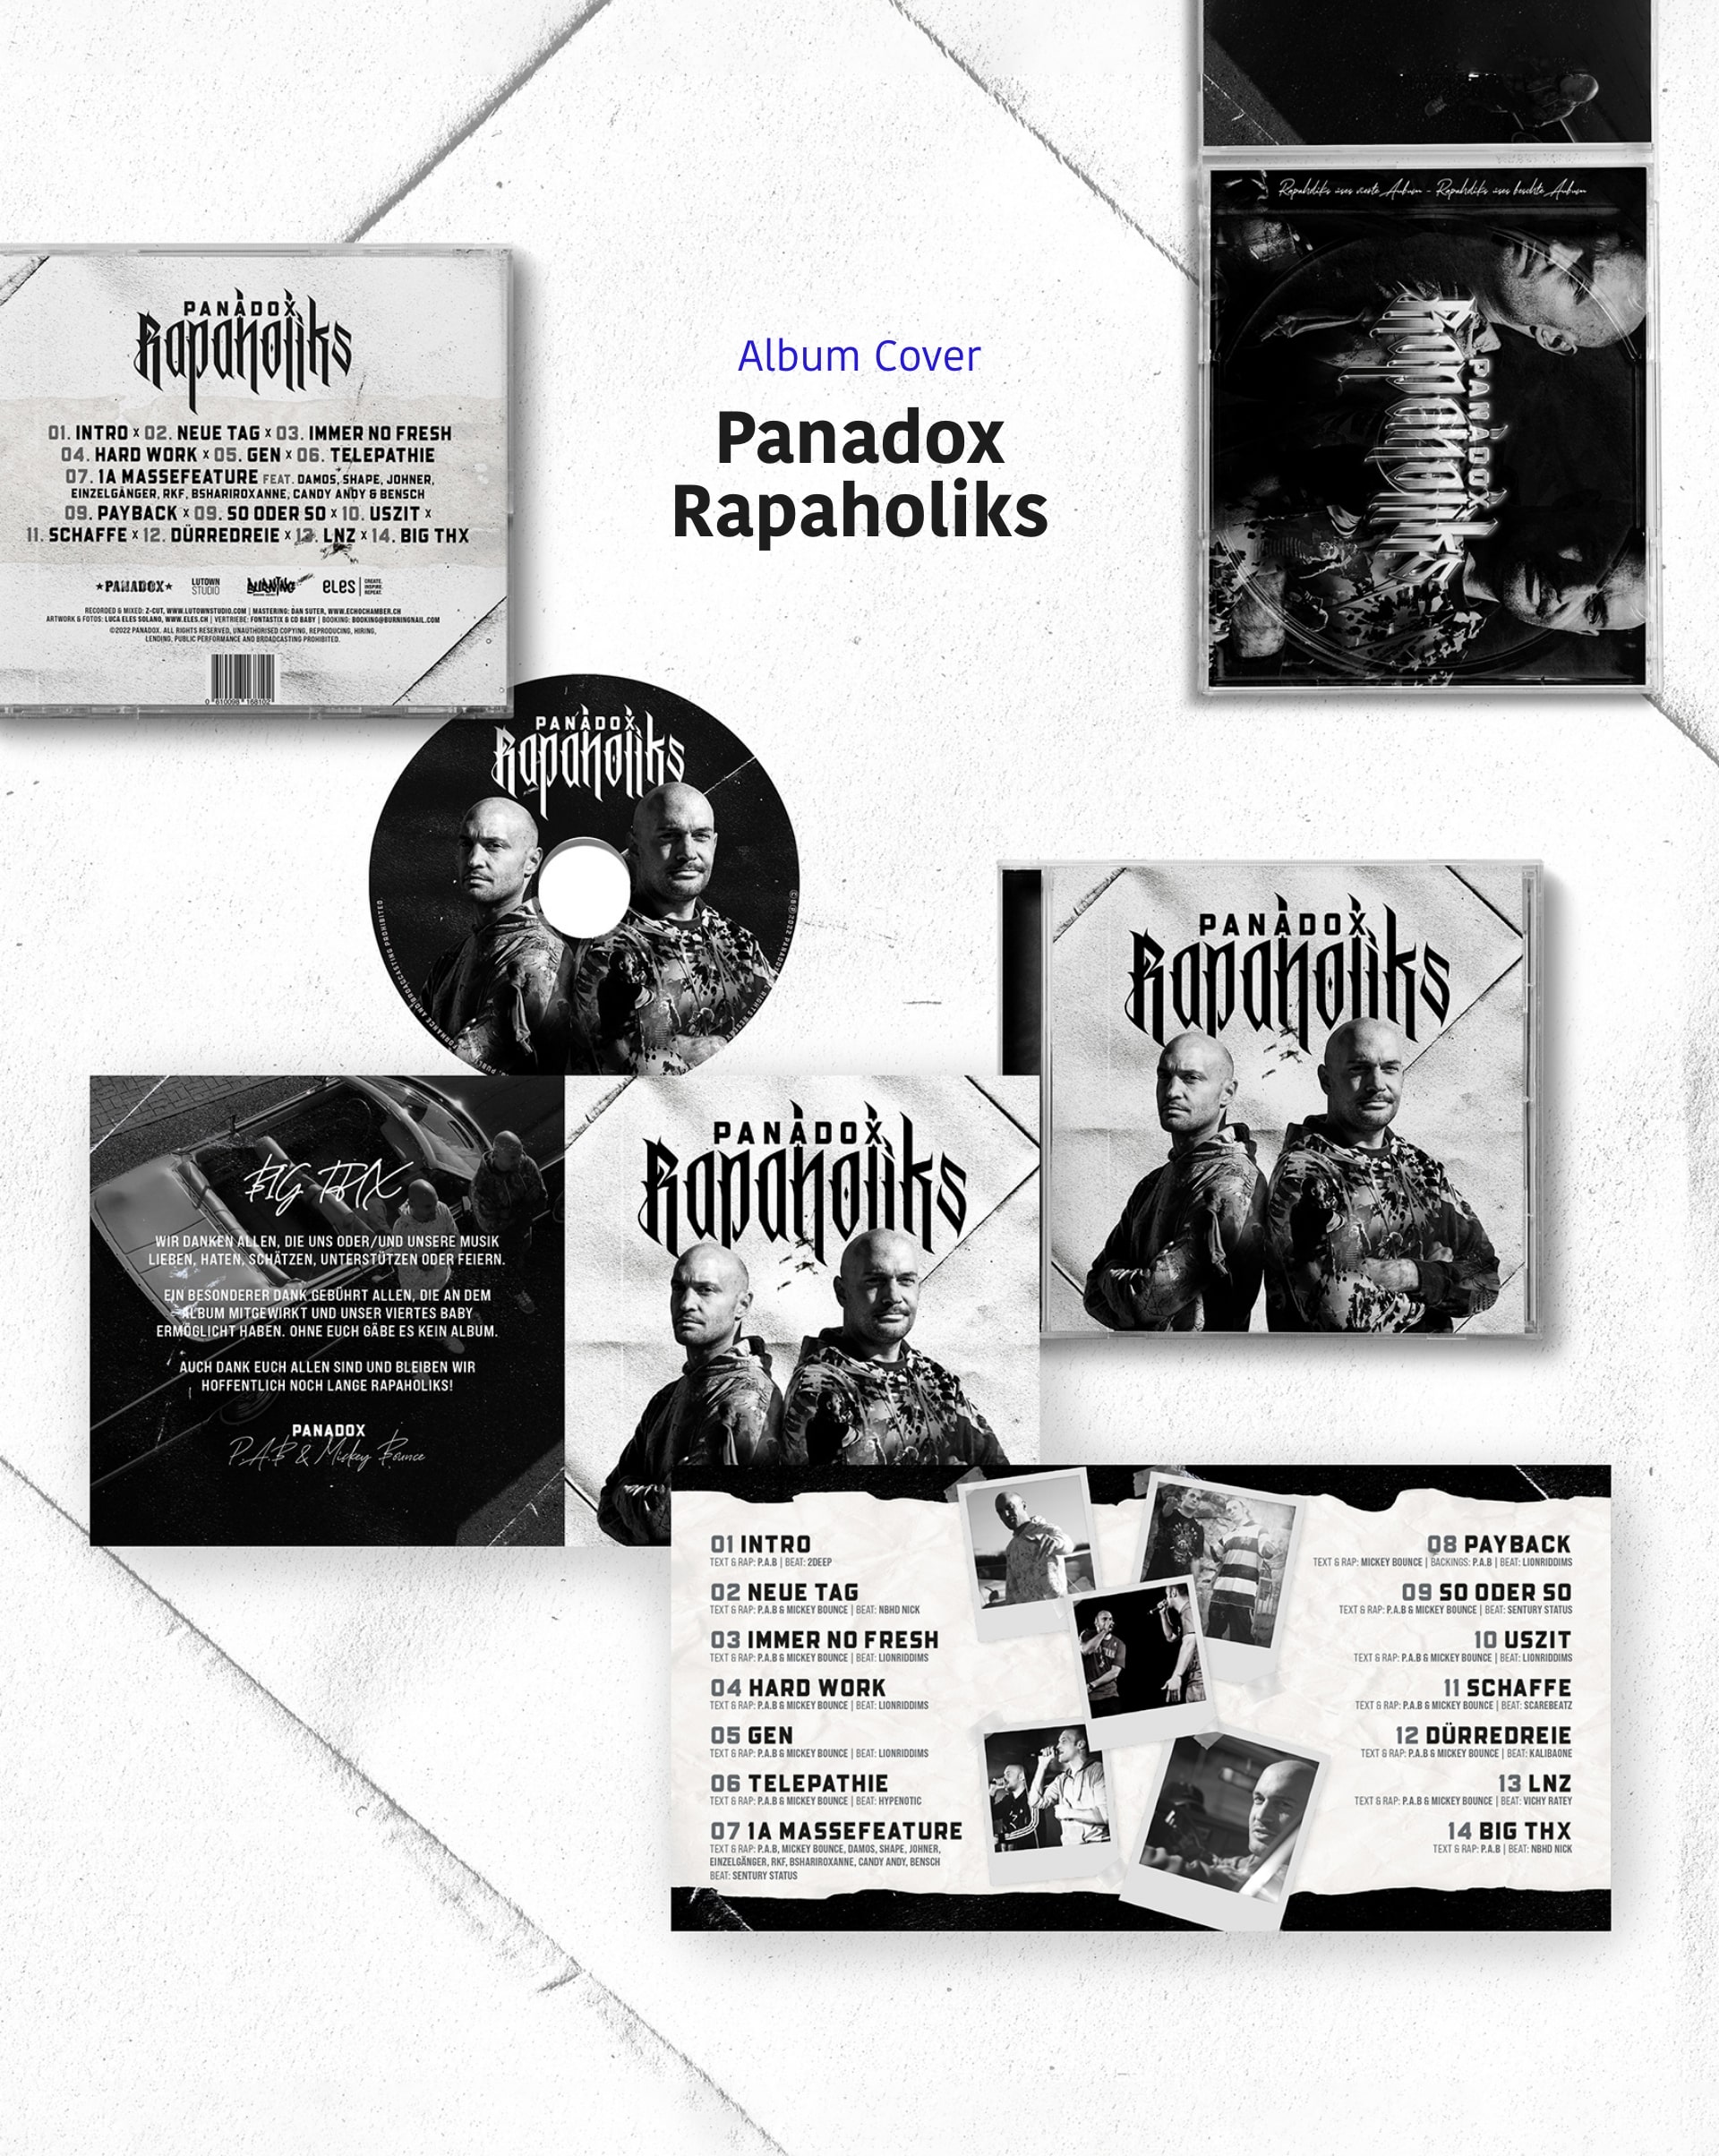 Panadox Rapaholiks, Album Cover, Spotify, Swissrap, Music Artwork